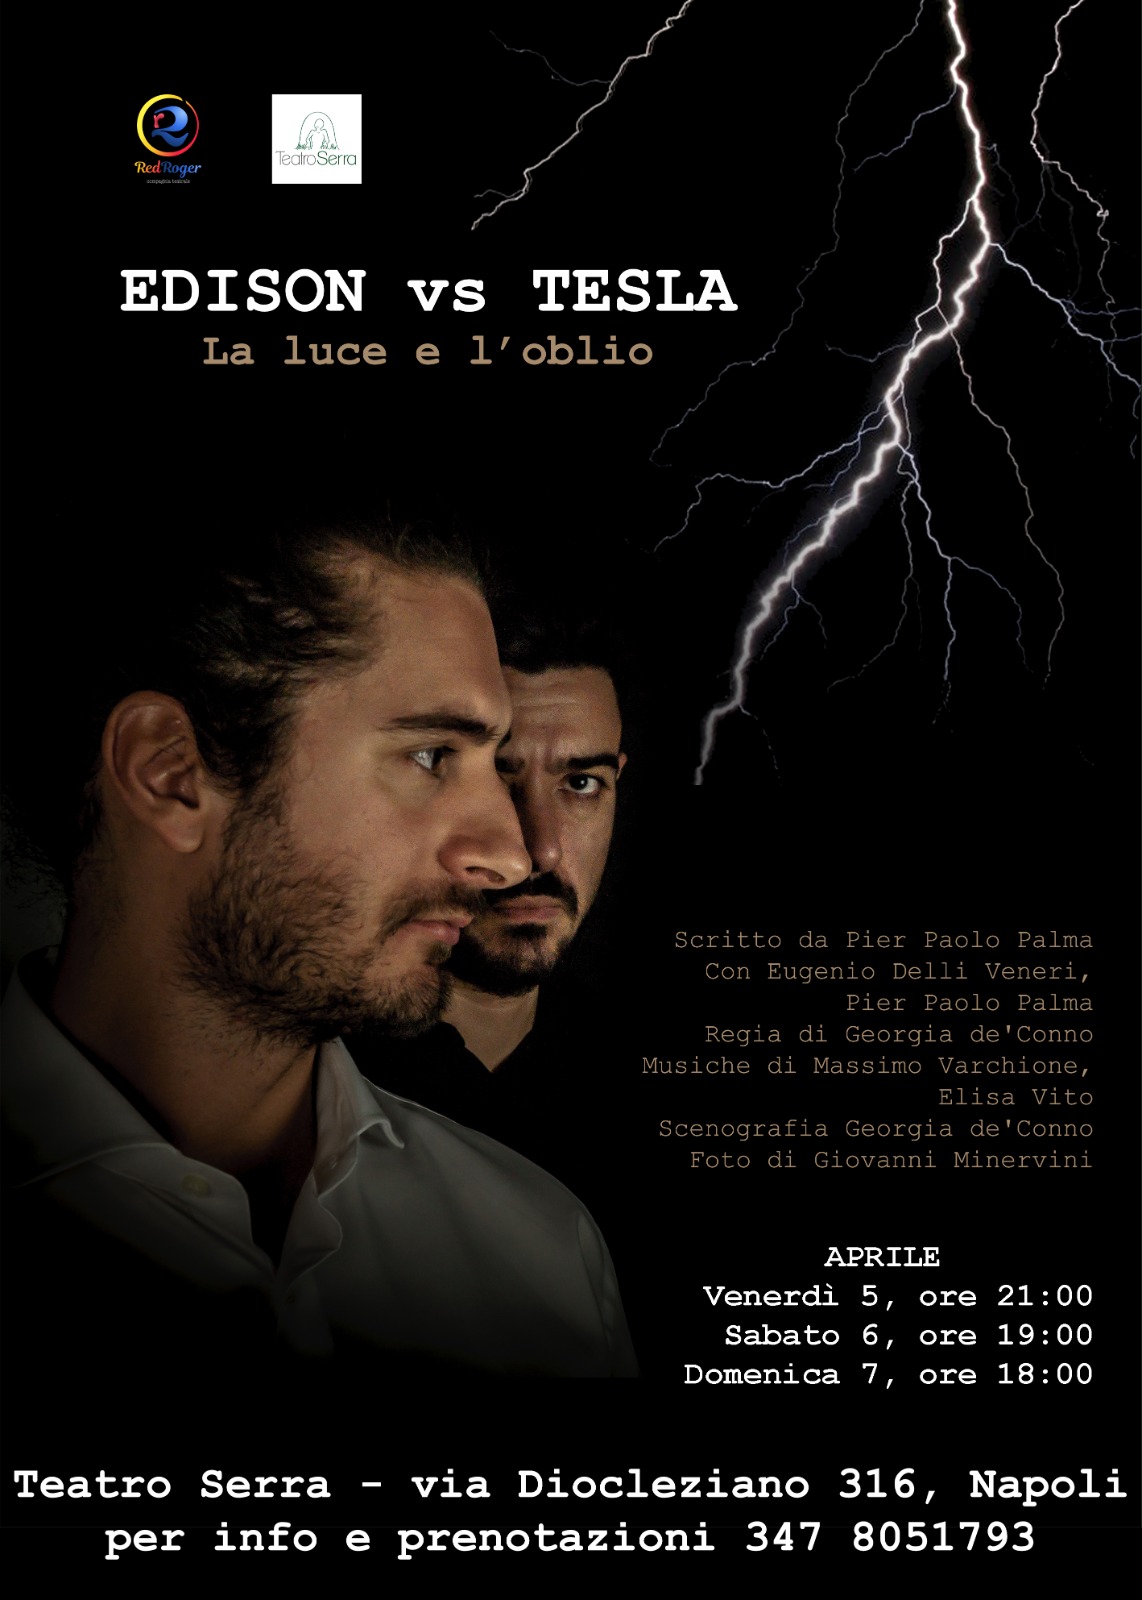 Al Teatro Serra la guerra per l'elettricità tra Edison e Tesla - Napoli  Village - Quotidiano di Informazioni Online